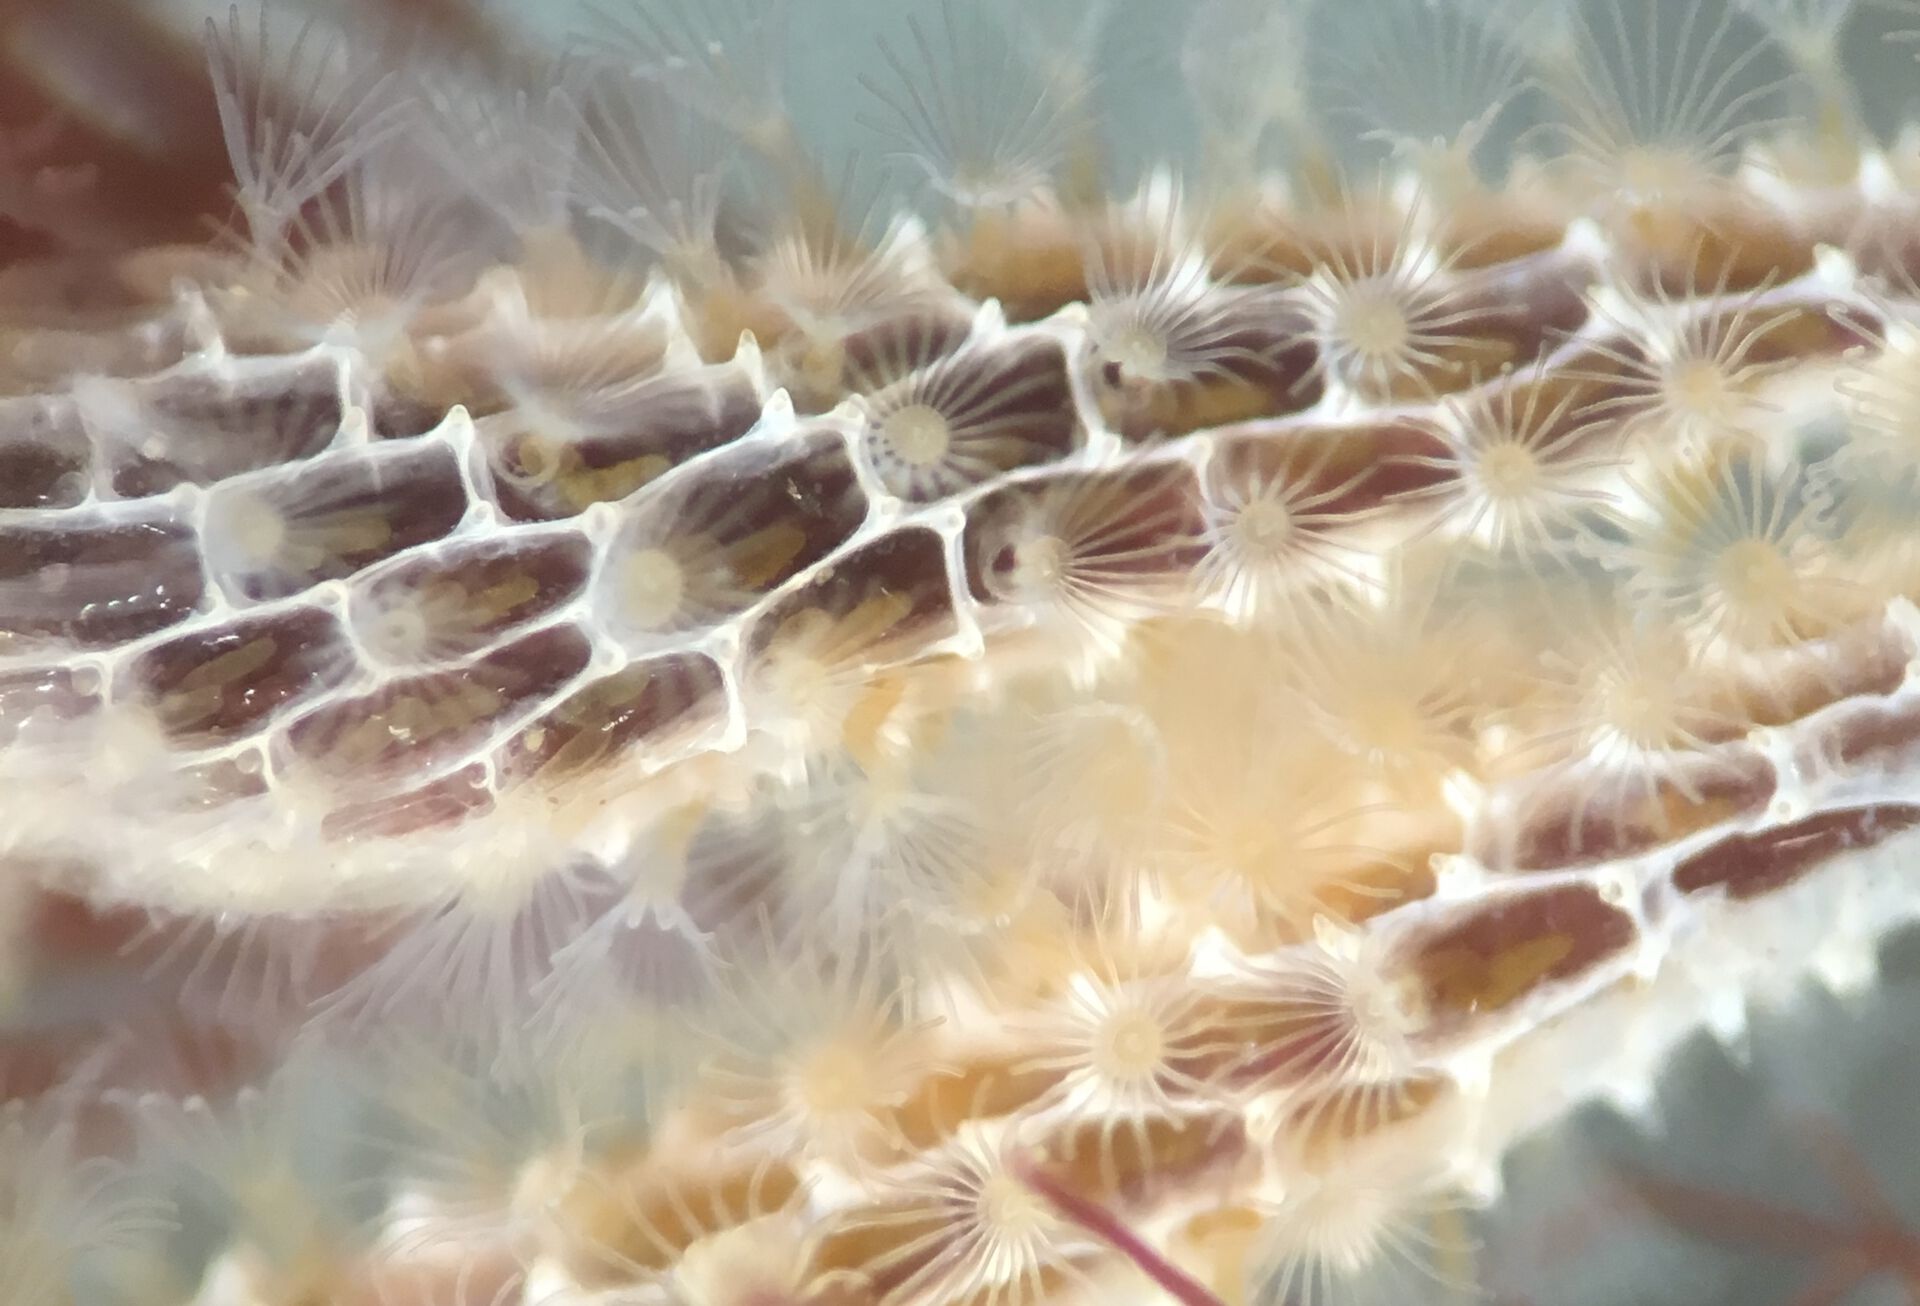 Photo of the bryozoan Membranipora membranacea